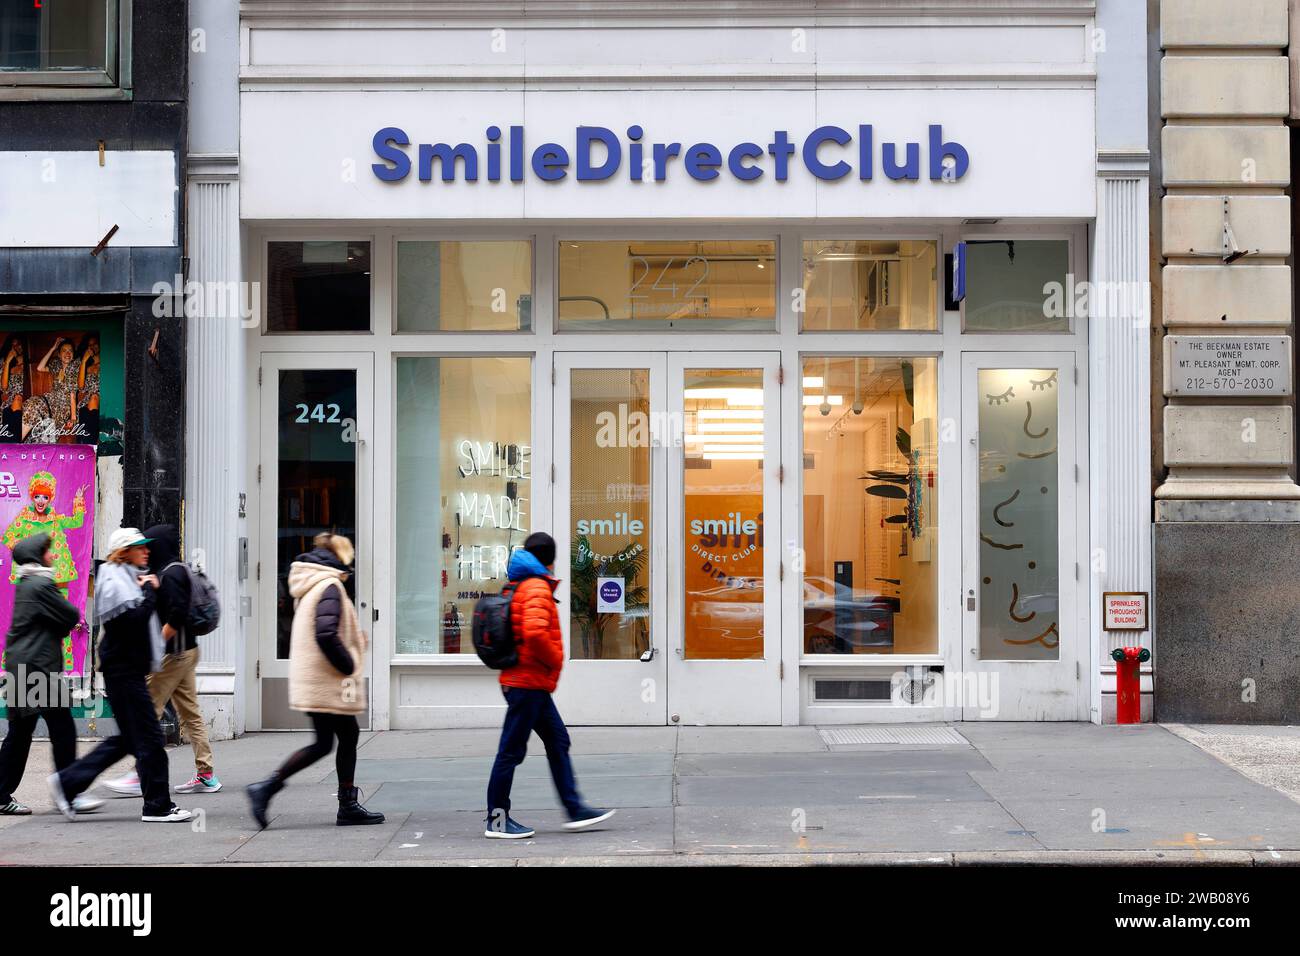 SmileDirectClub, 242 5th Ave, New York, NYC photo de vitrine d'une entreprise de télédentisterie d'alignement des dents. Banque D'Images